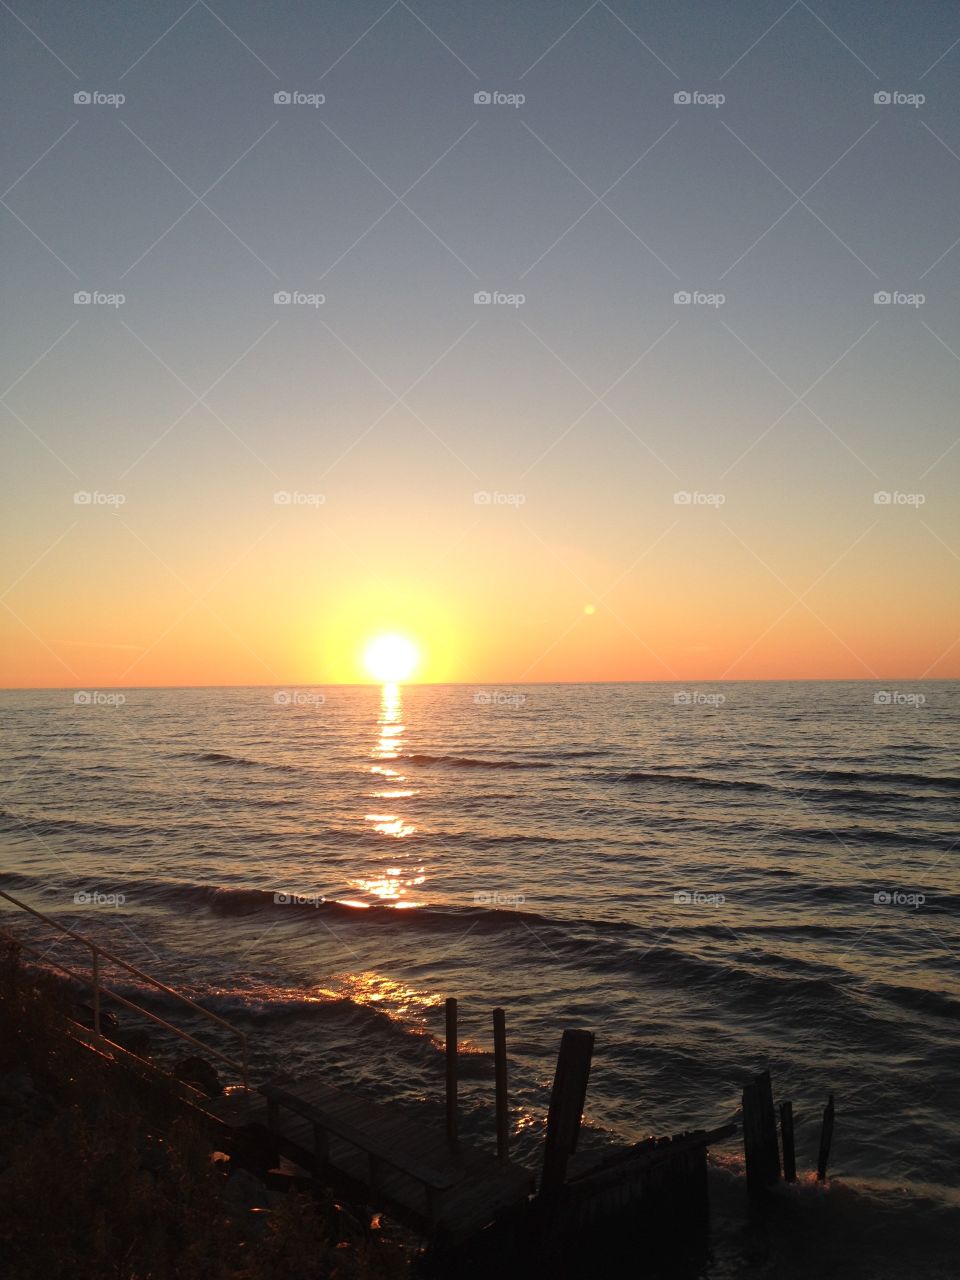 Pure Michigan Sunset. Lake Michigan sunset